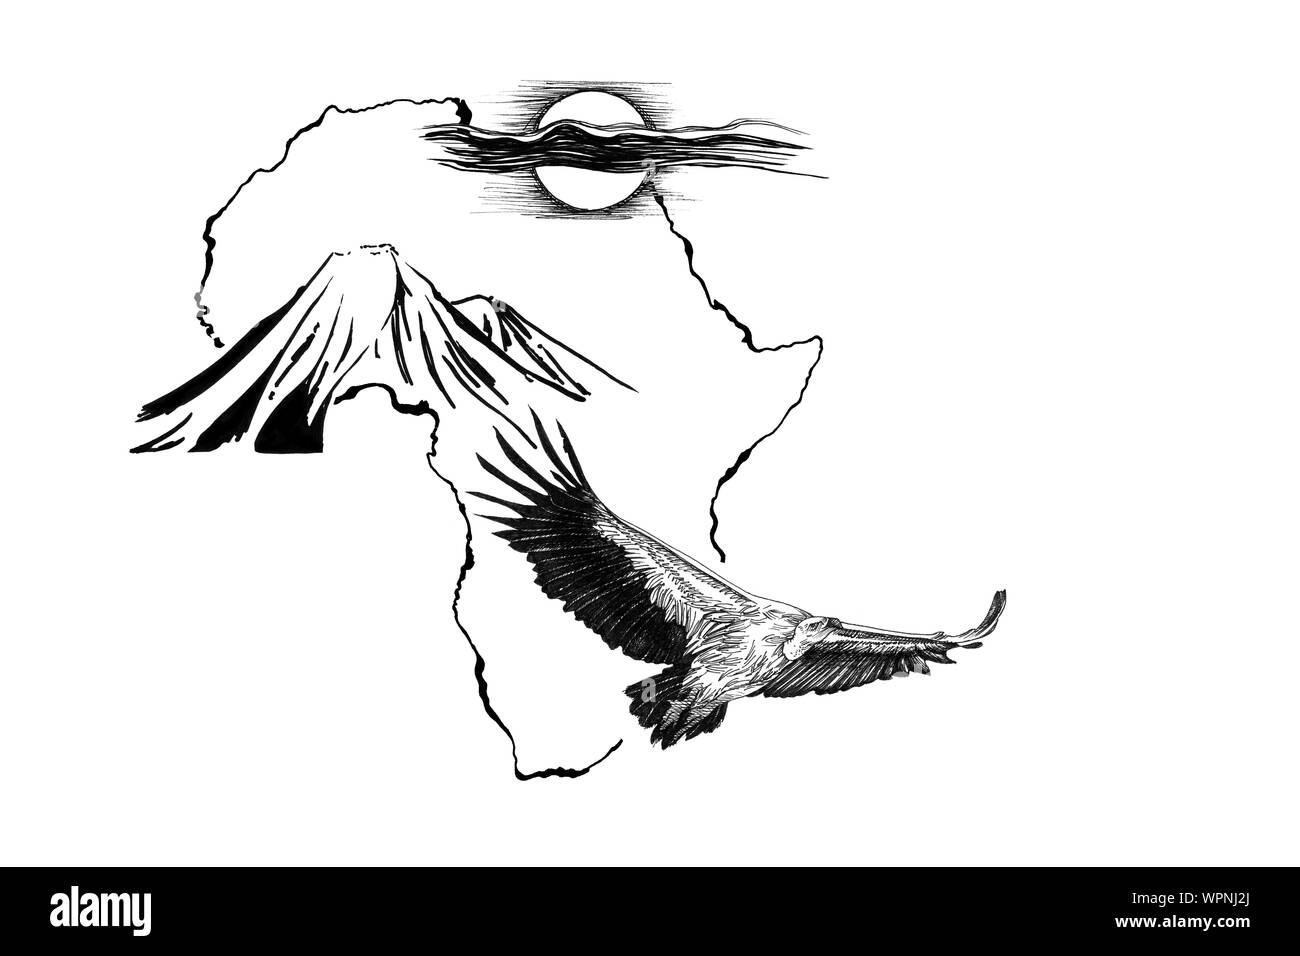 Sur fond de carte de l'Afrique de vautour avec Kilimandjaro montagne et soleil. Collection d'illustrations faites à la main (originaux, pas de traces) Banque D'Images